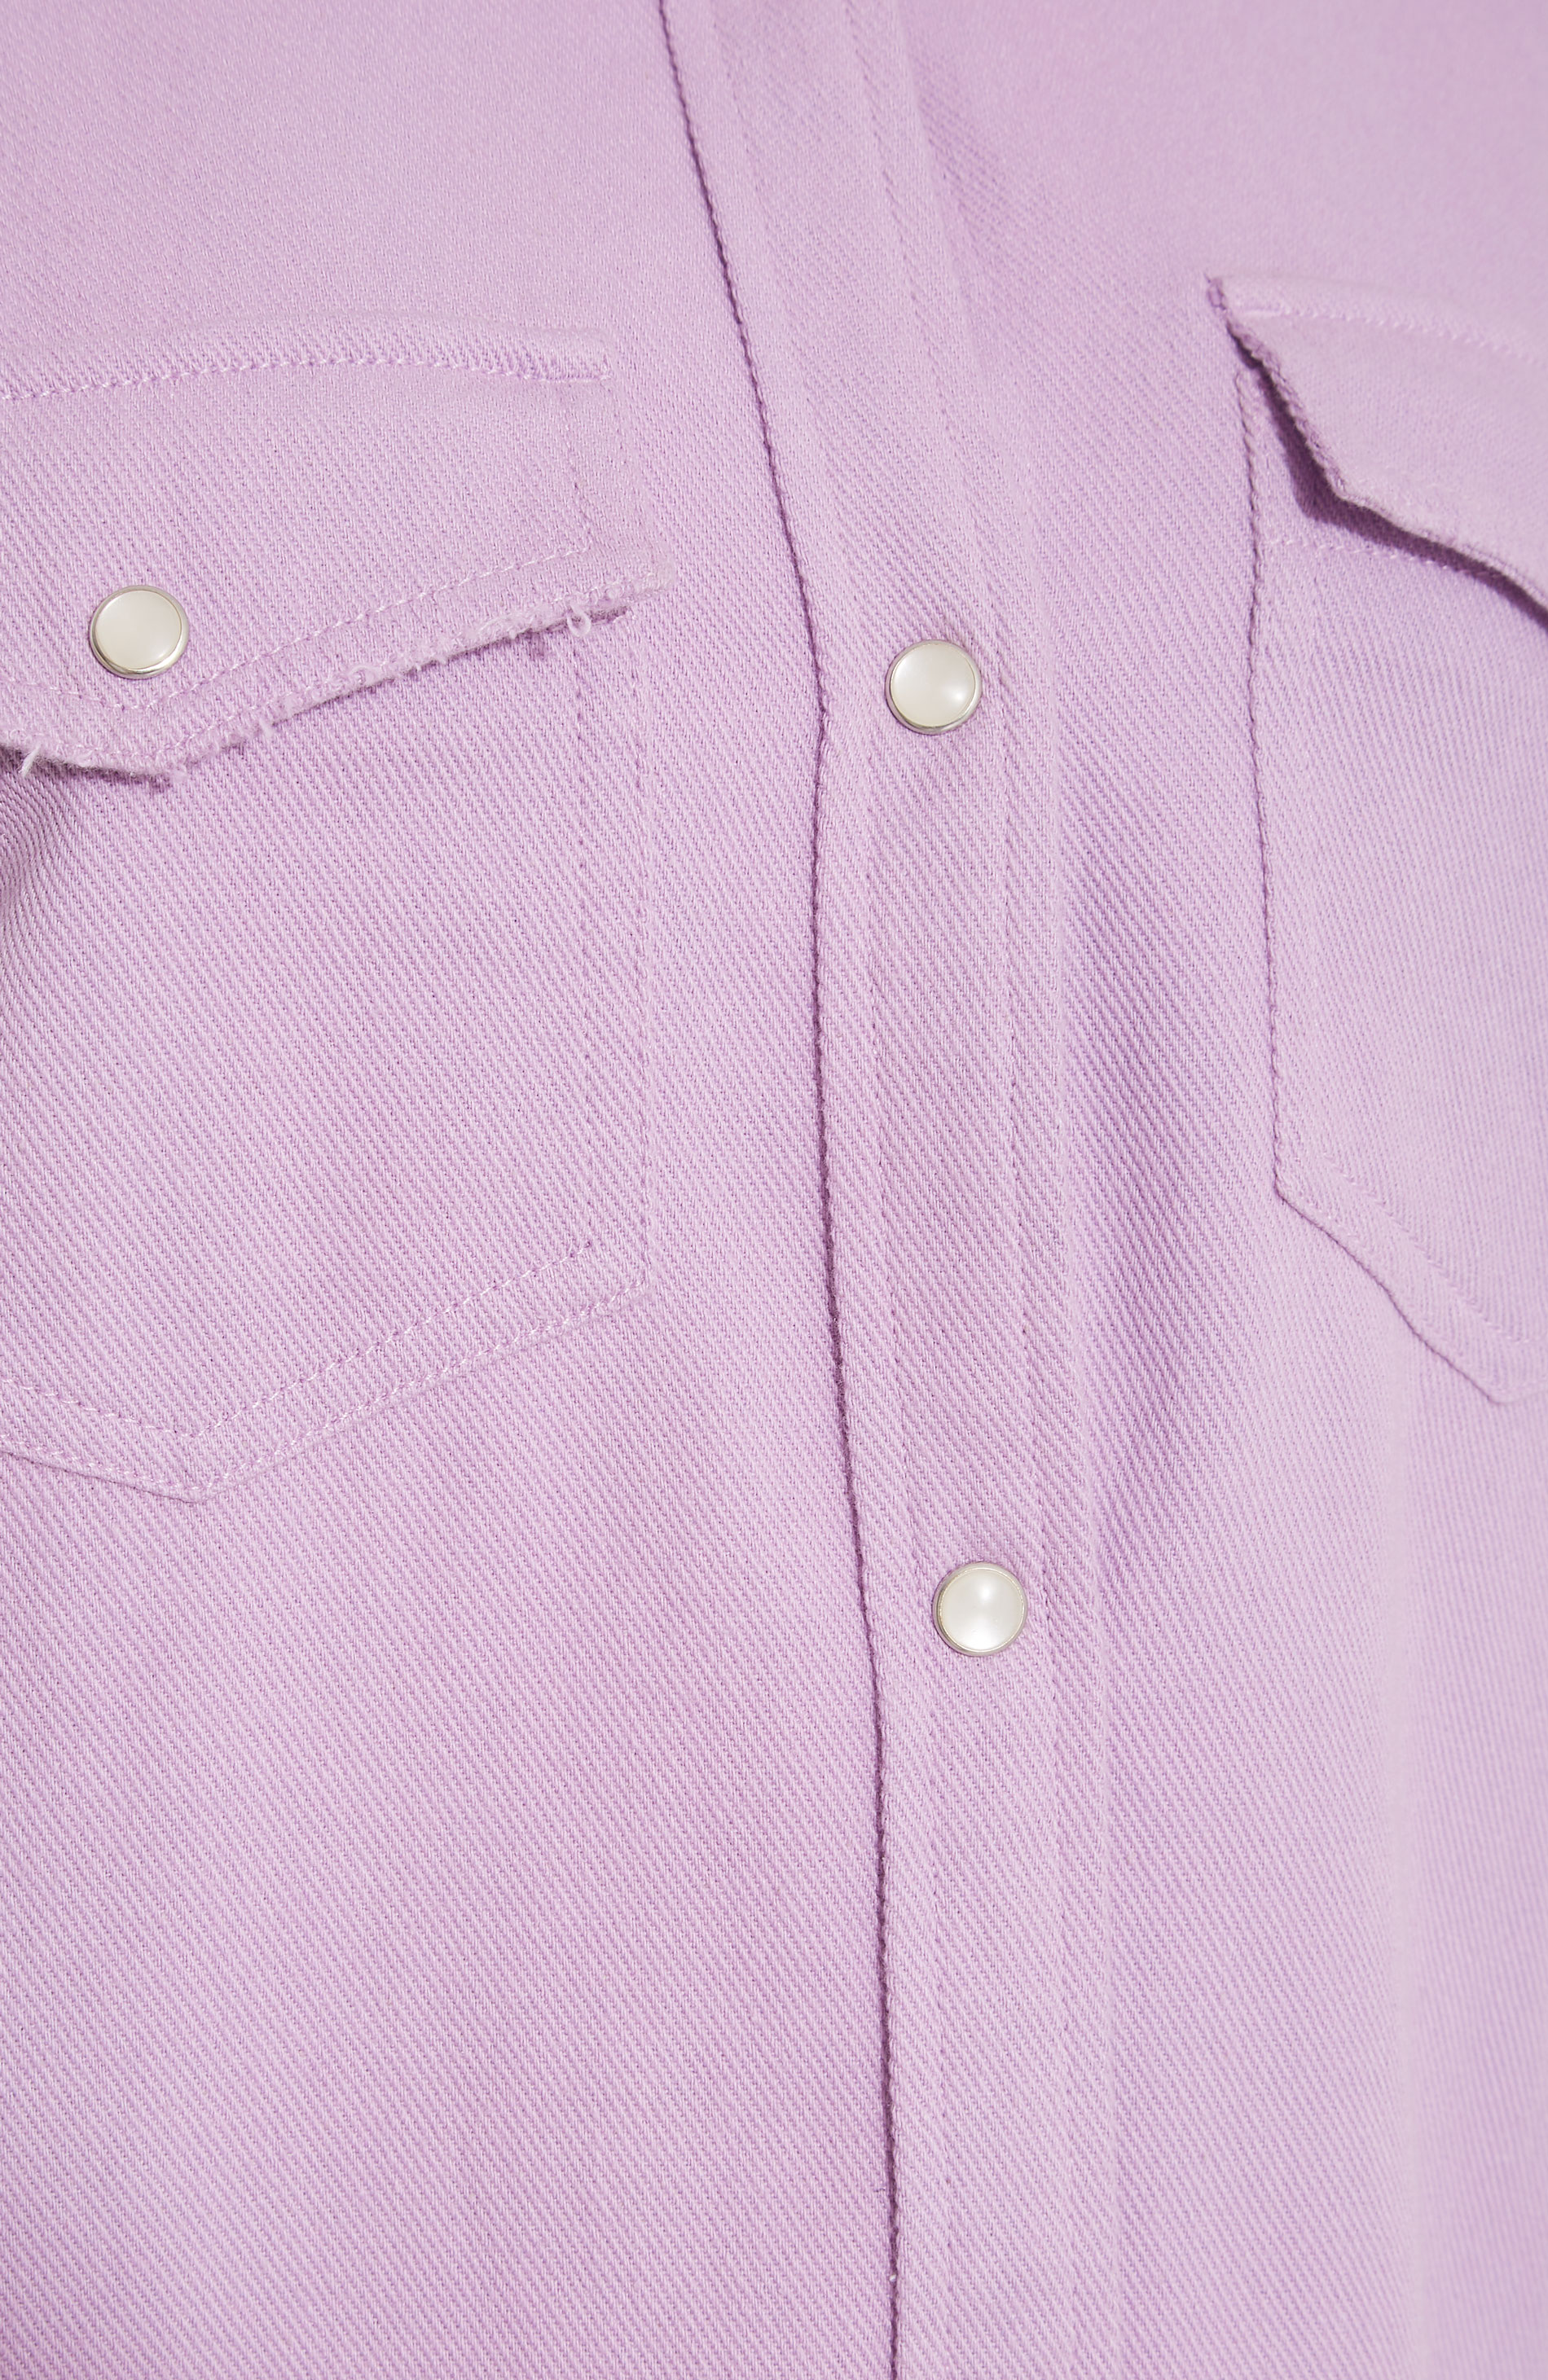 LTS Tall Women's Lilac Purple Distressed Twill Shirt | Long Tall Sally 1